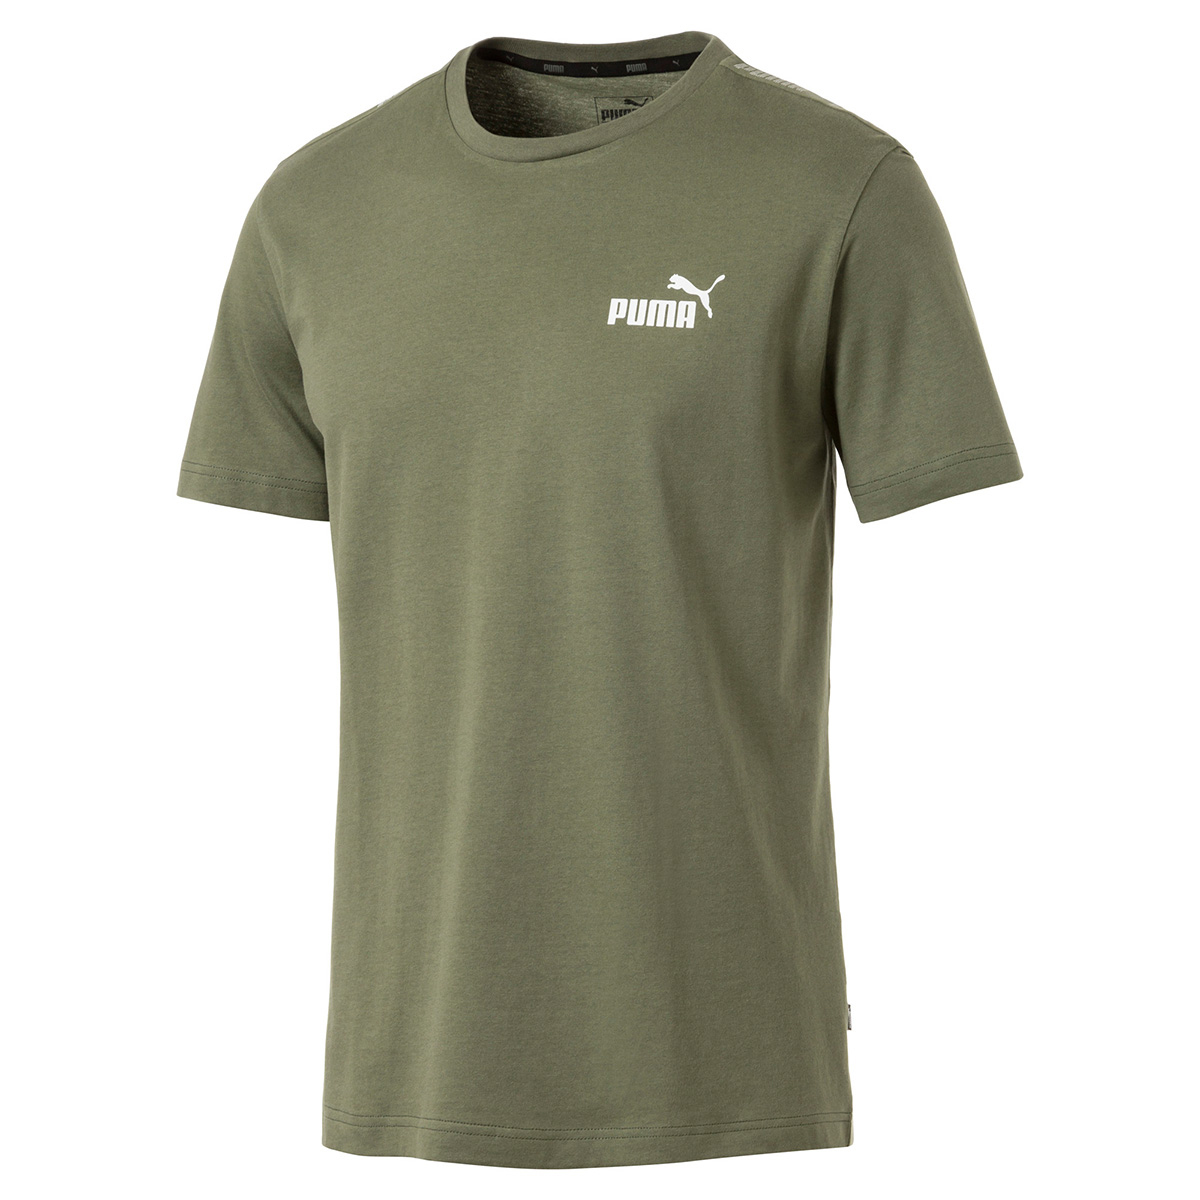 PUMA Herren Amplified Tee T-Shirt grün 854655 31